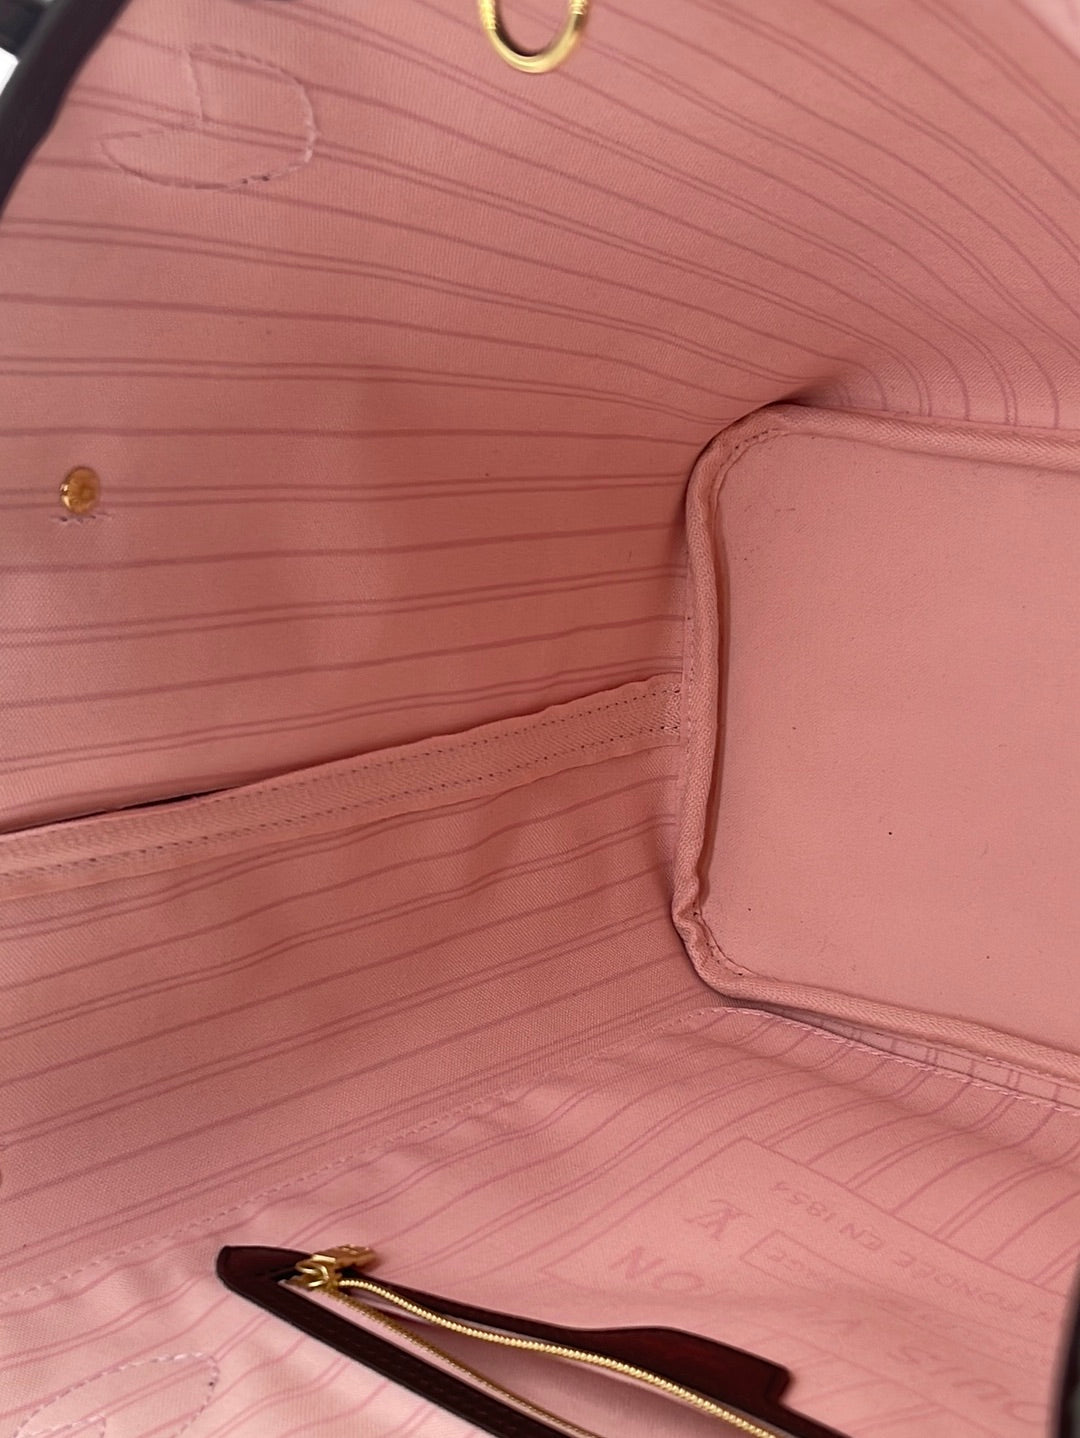 Neverfull mm Damier ebene Ballerine pink interior